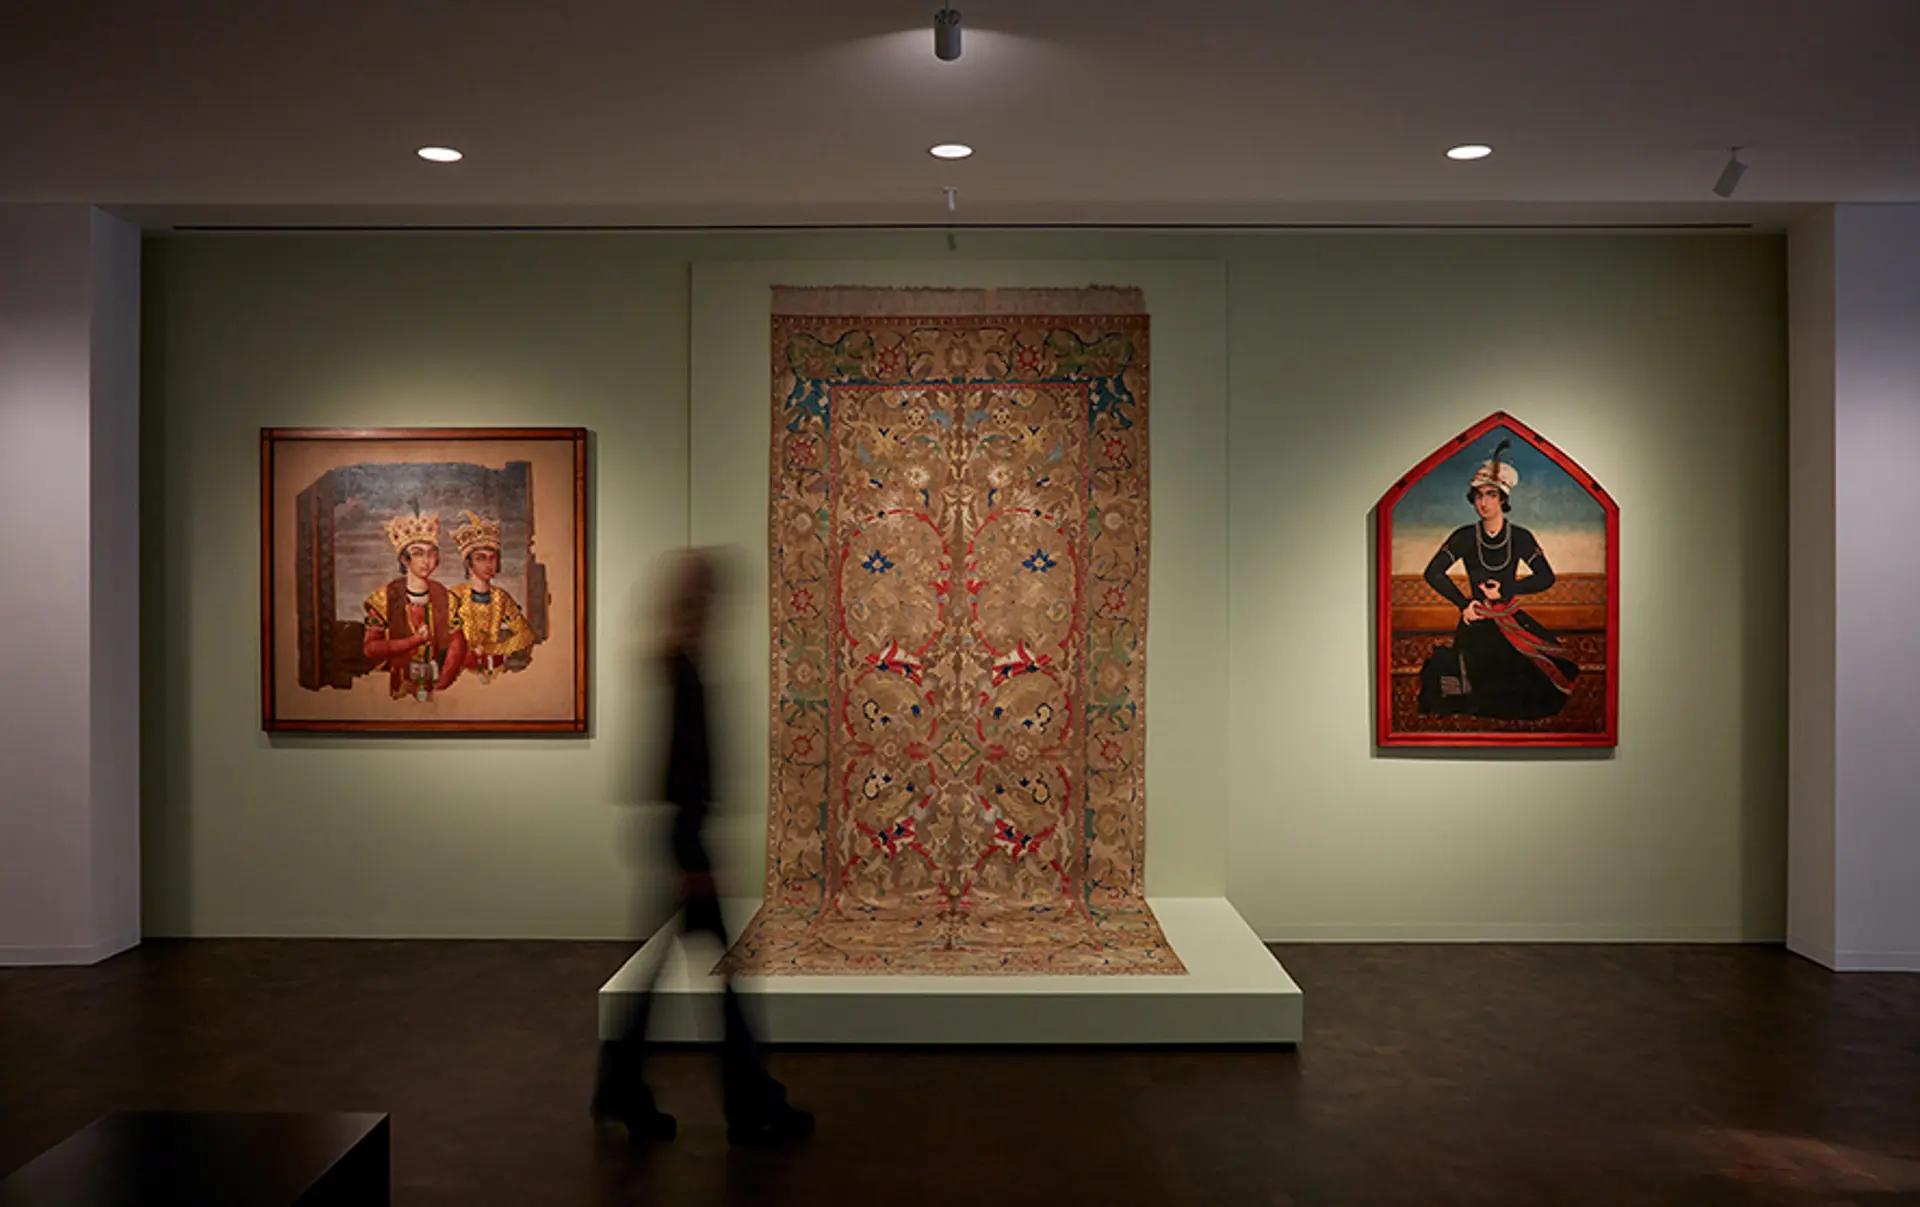 Les nouvelles galeries présentant la collection d’art islamique d’Hossein Afshar au Museum of Fine Arts de Houston. Photo : Richard Barnes